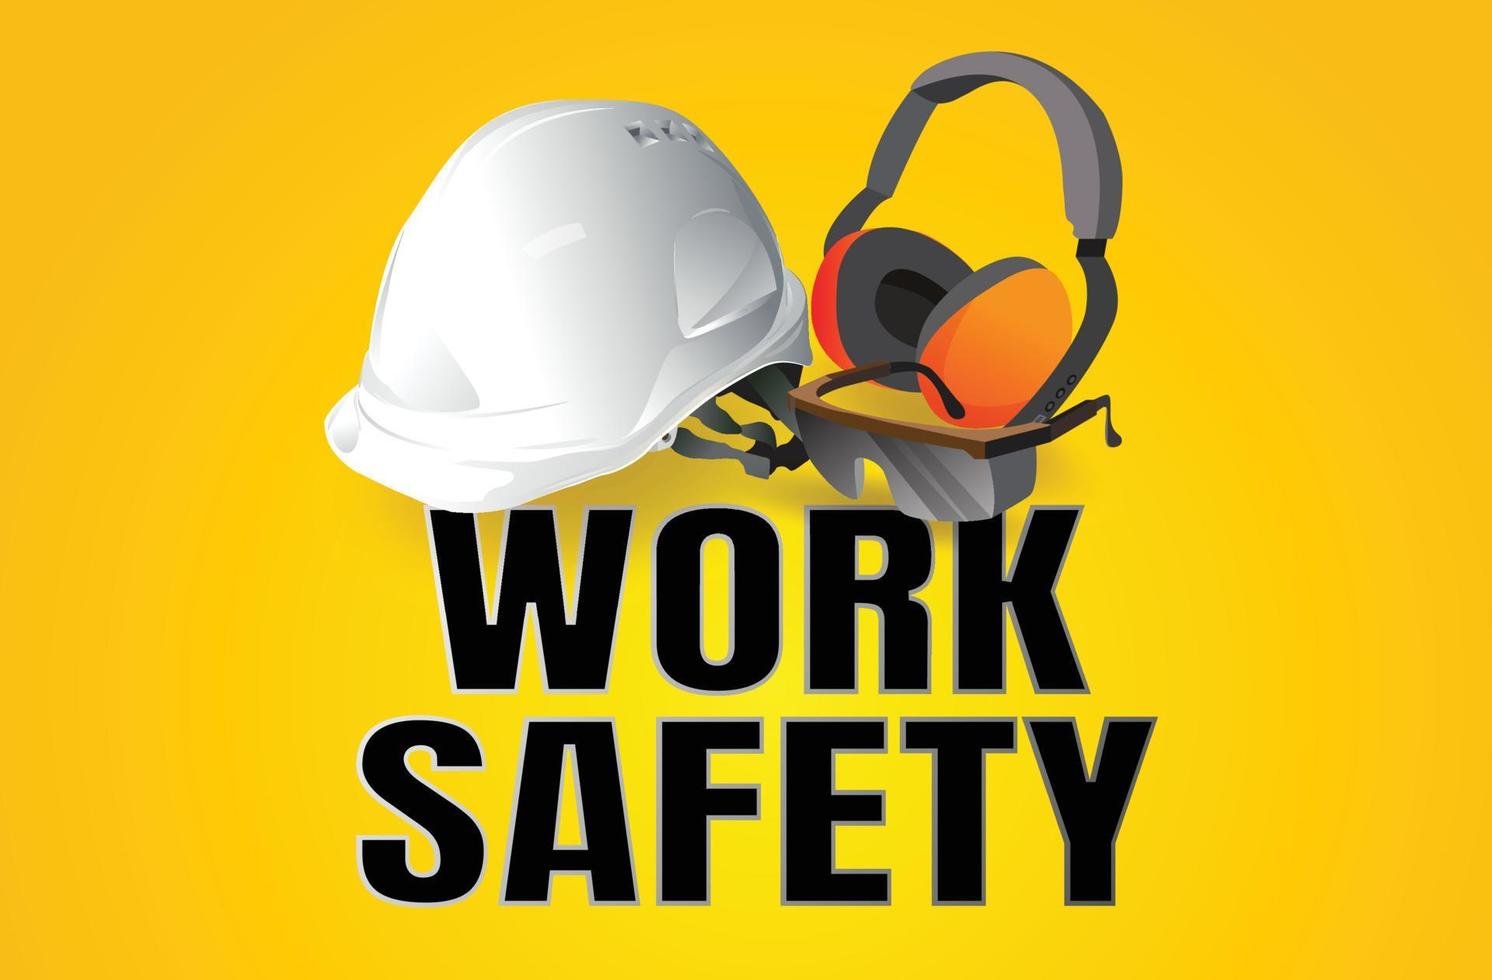 sicurezza sul lavoro, equipaggiamento di sicurezza, concetto di costruzione, disegno vettoriale